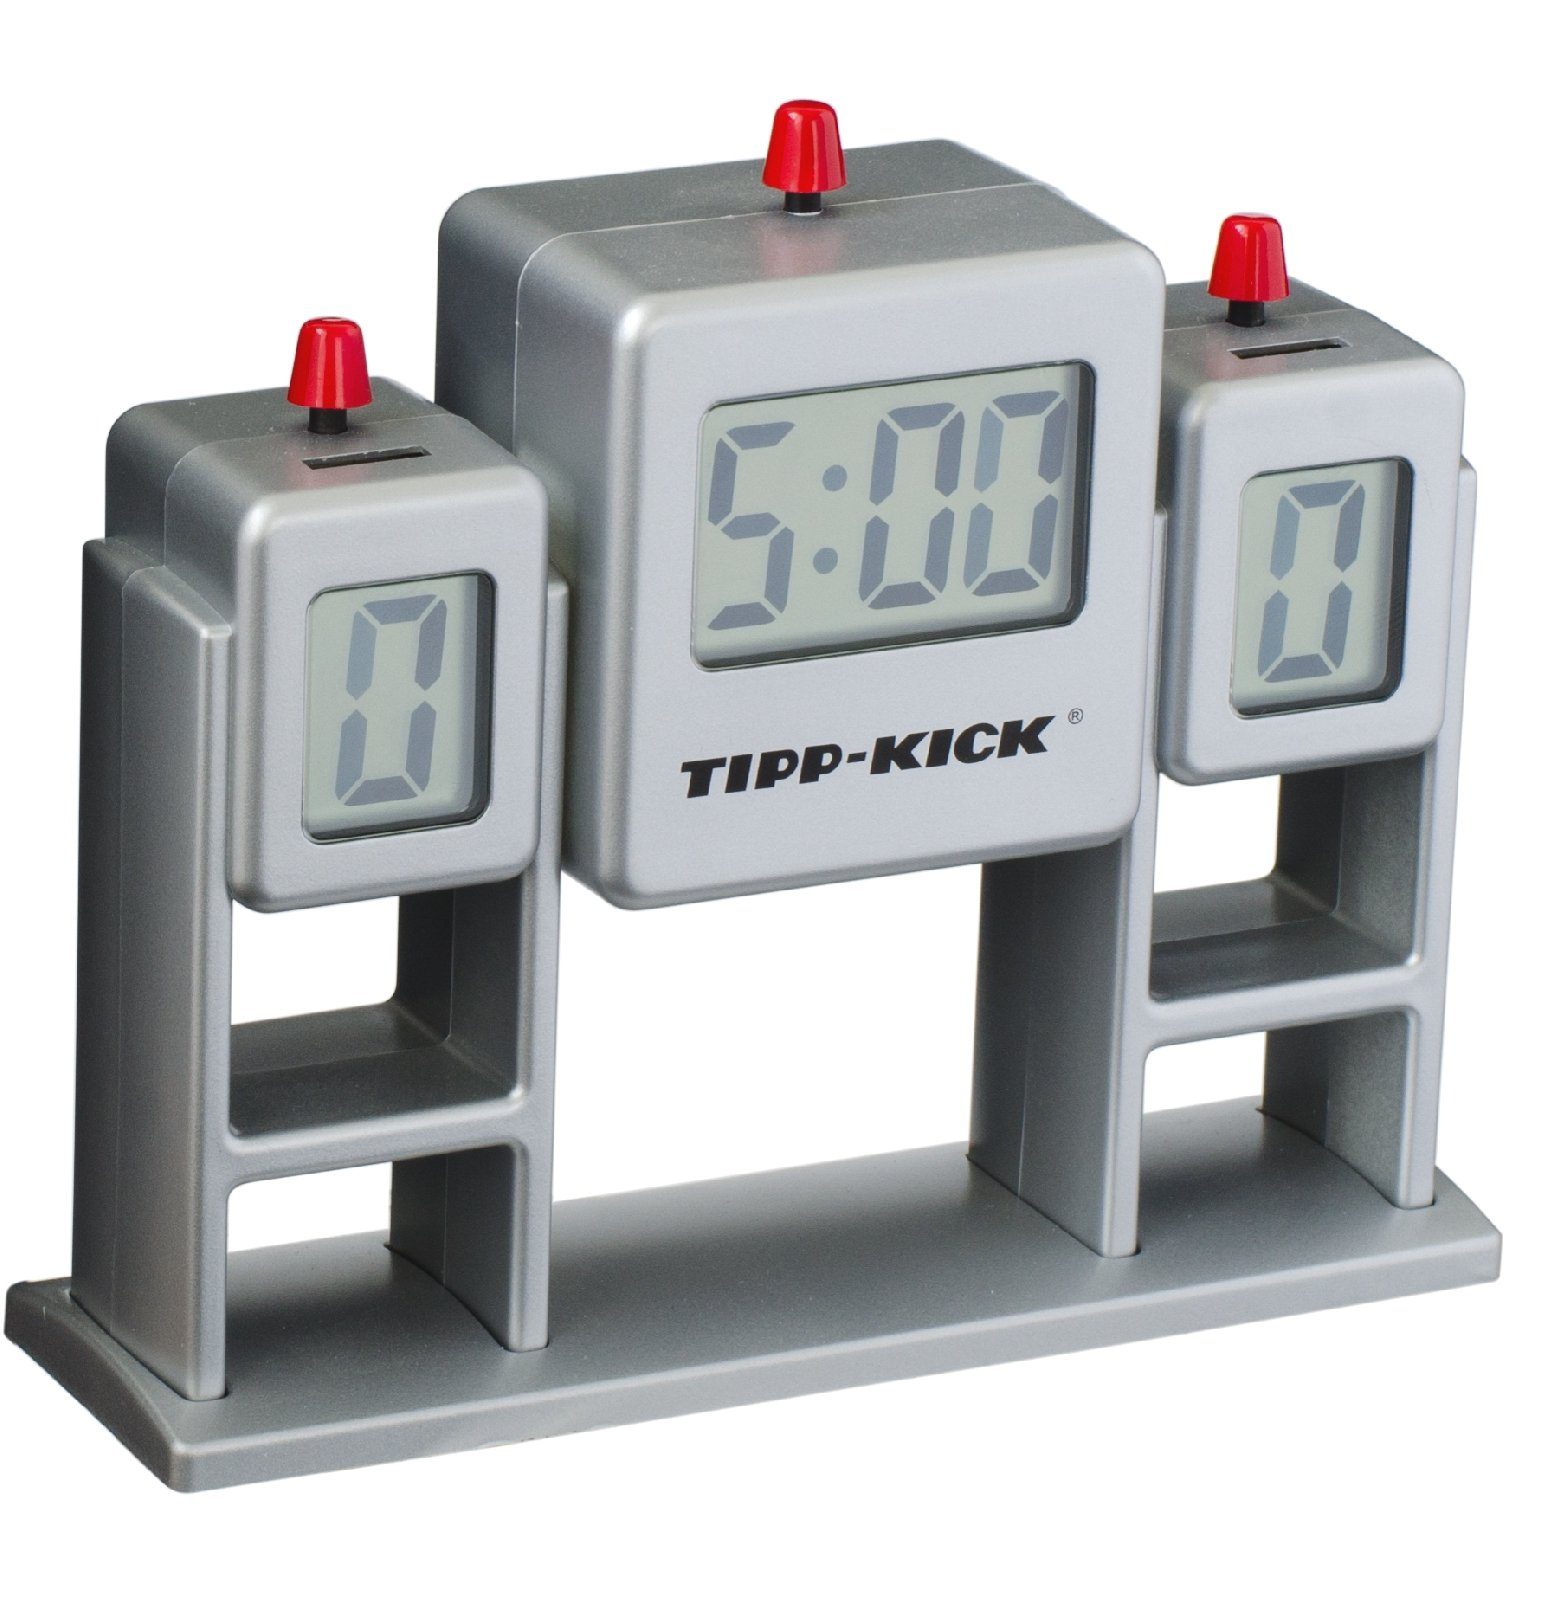 Tip Stoppuhr Kick Tipp-Kick Sound Spiel Zeitanzeige Halbzeituhr Tischfußballspiel Uhr Match